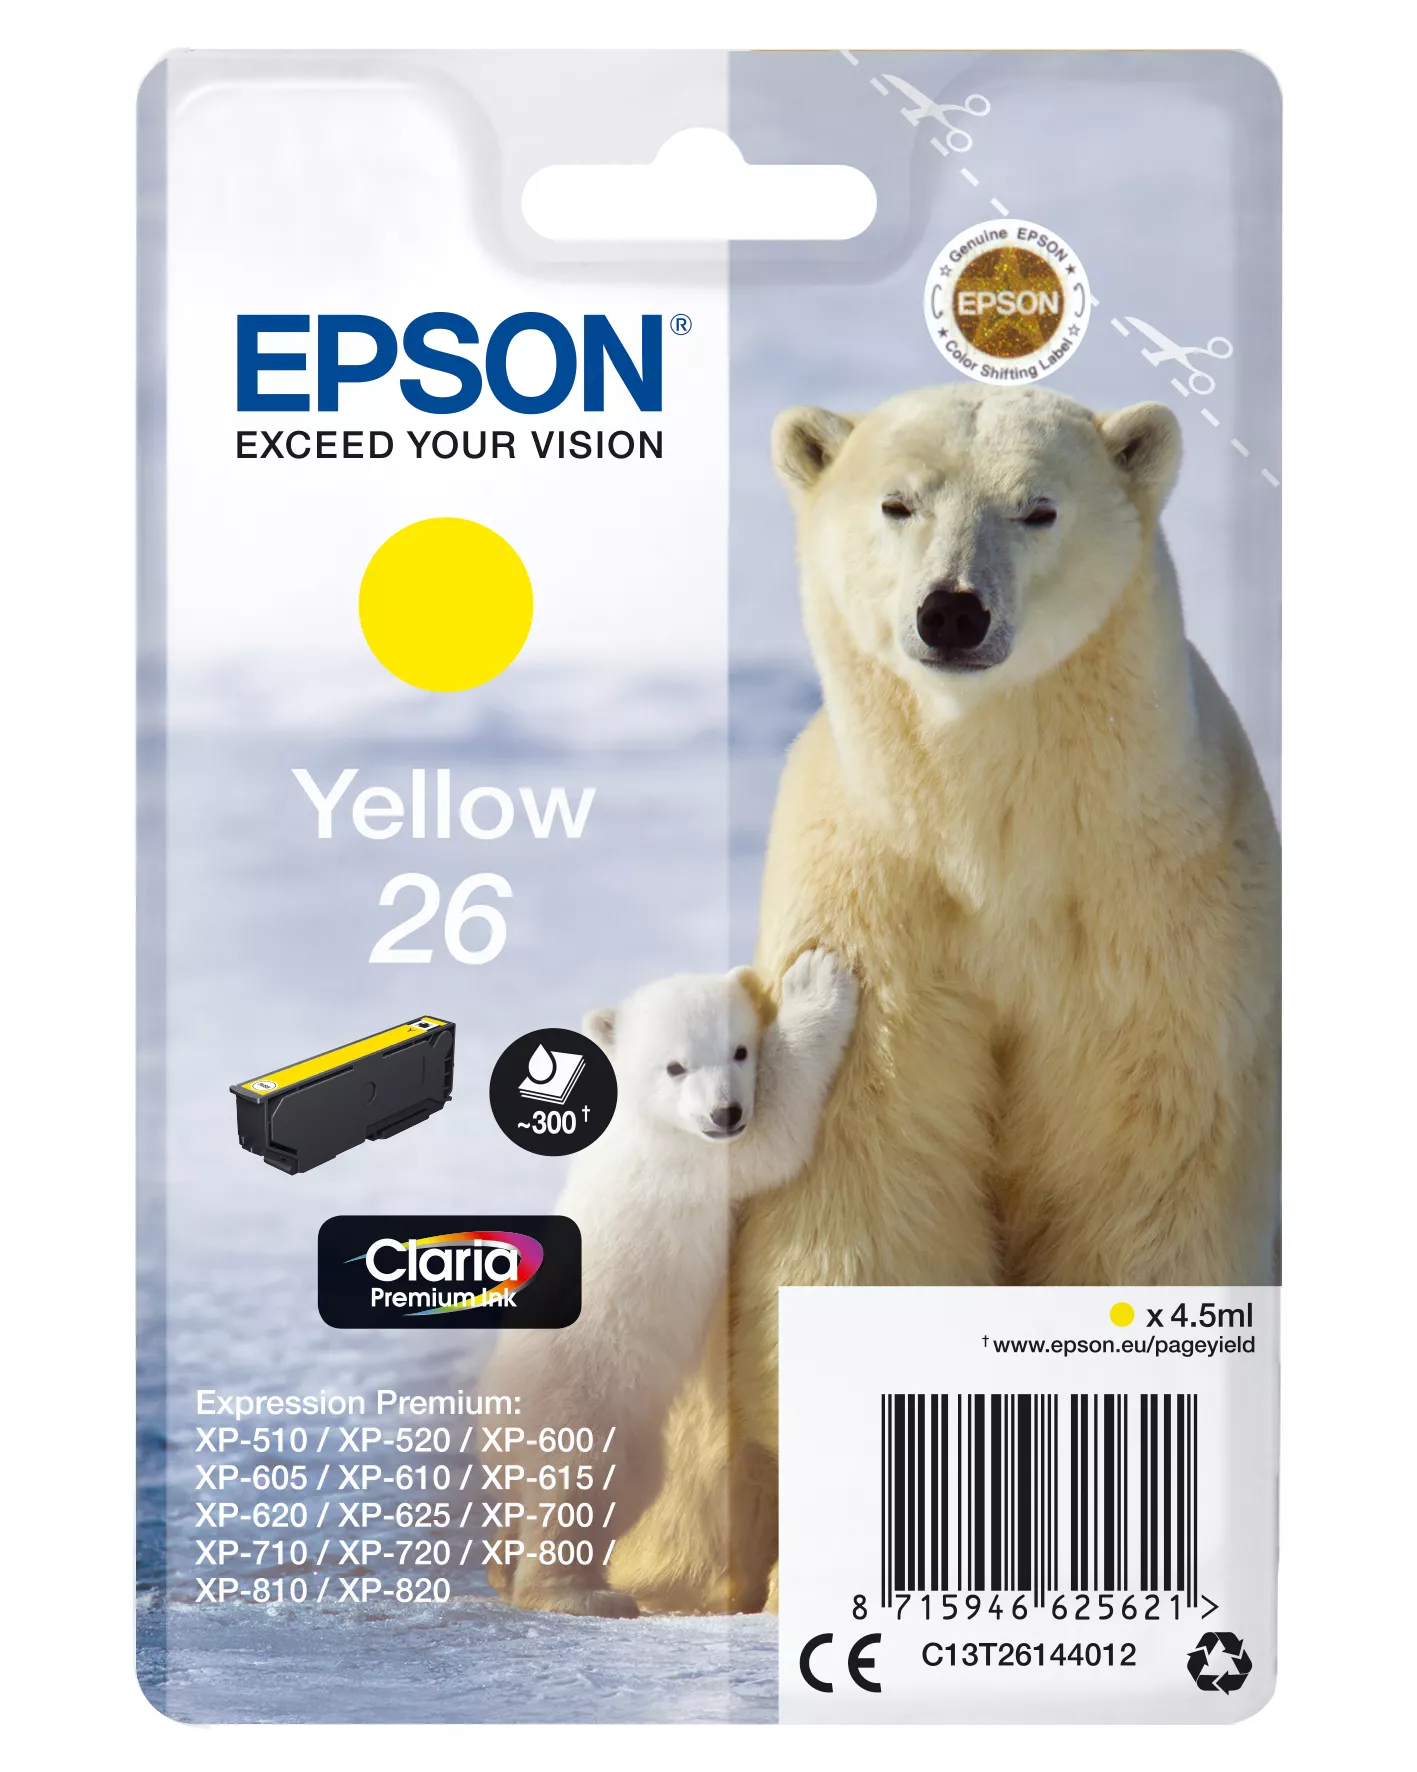 Vente Cartouches d'encre EPSON 26 cartouche dencre jaune capacité standard 4.5ml